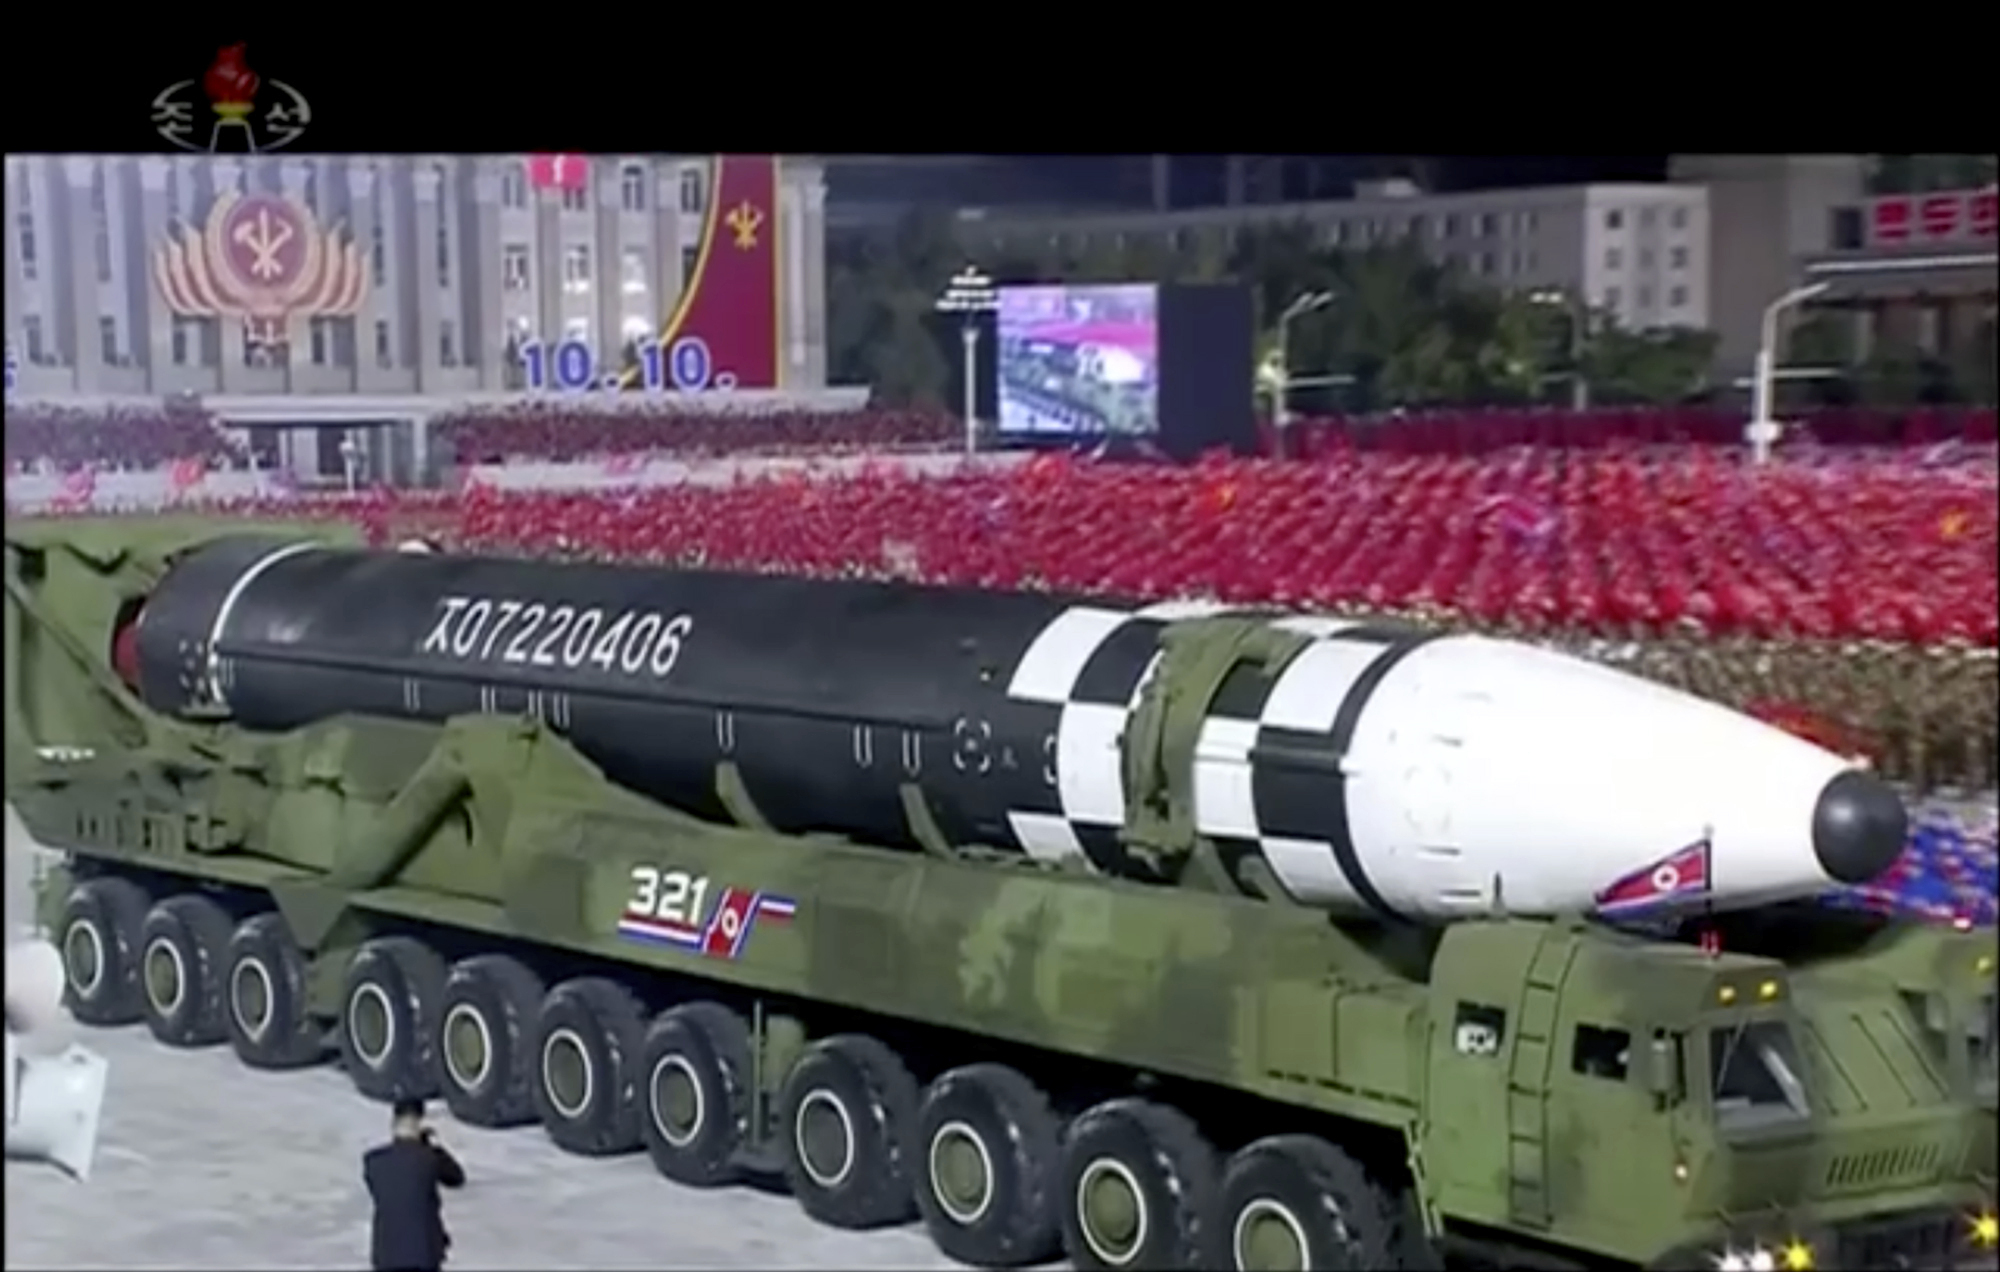 Ο Κιμ Γιονγκ Ουν προειδοποίησε ότι θα χρησιμοποιήσει το νέο πύραυλο και το υπόλοιπο οπλοστάσιό του αν δεχθεί η χώρα του απειλές